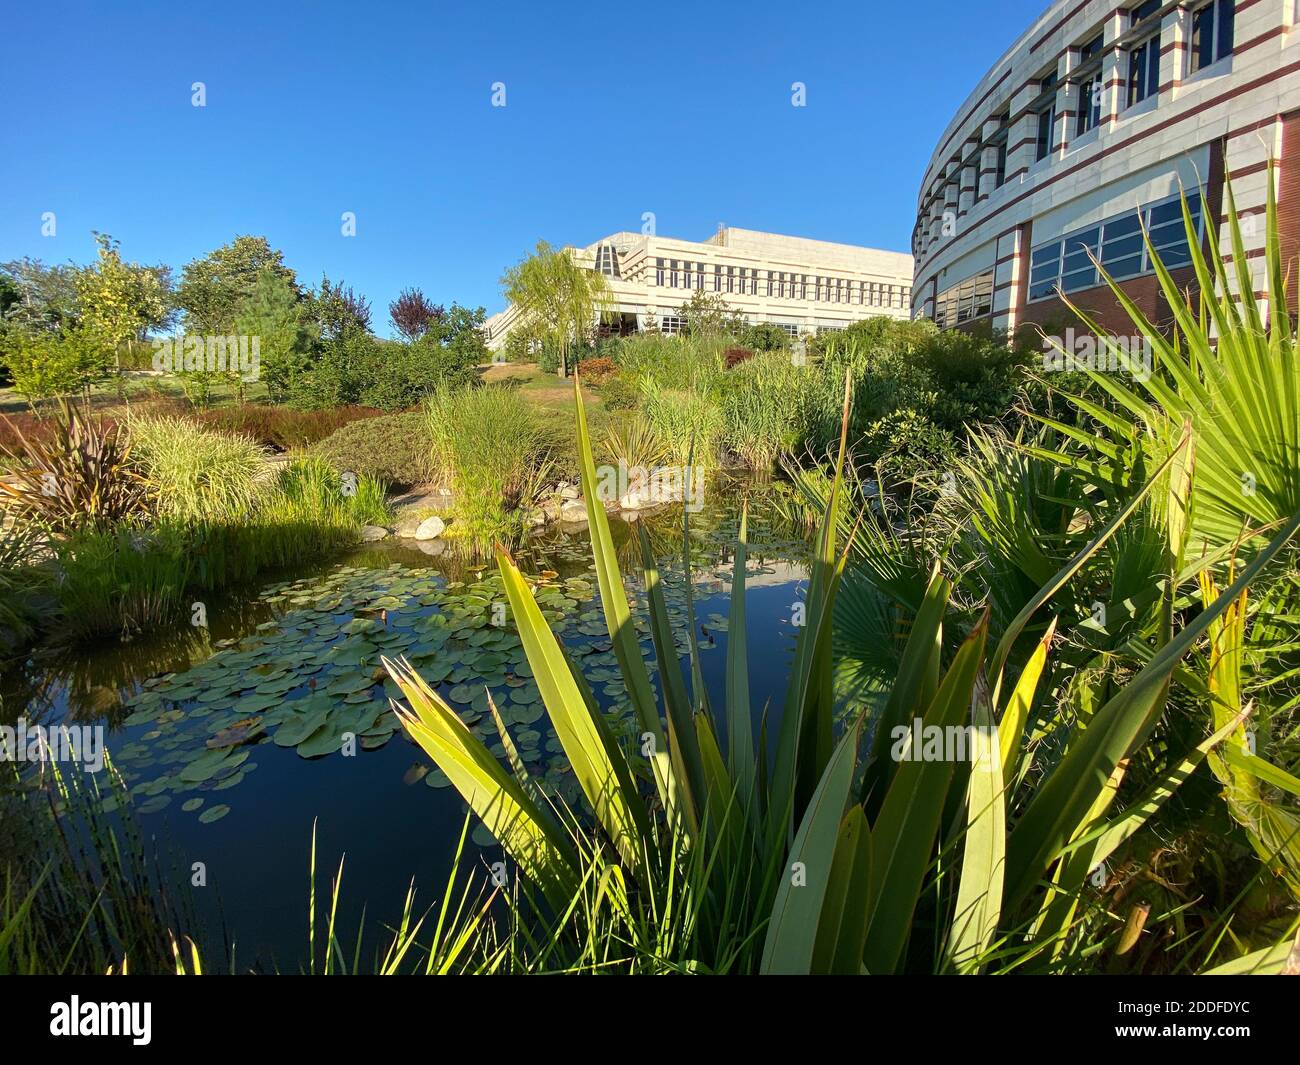 Natürlicher grüner Park mit Bäumen, Pflanzen und einem kleinen See mit Lotusblättern. Wunderschönes, ruhiges Hotel. Moderne Architektur Steinbeton Gebäude. Stockfoto